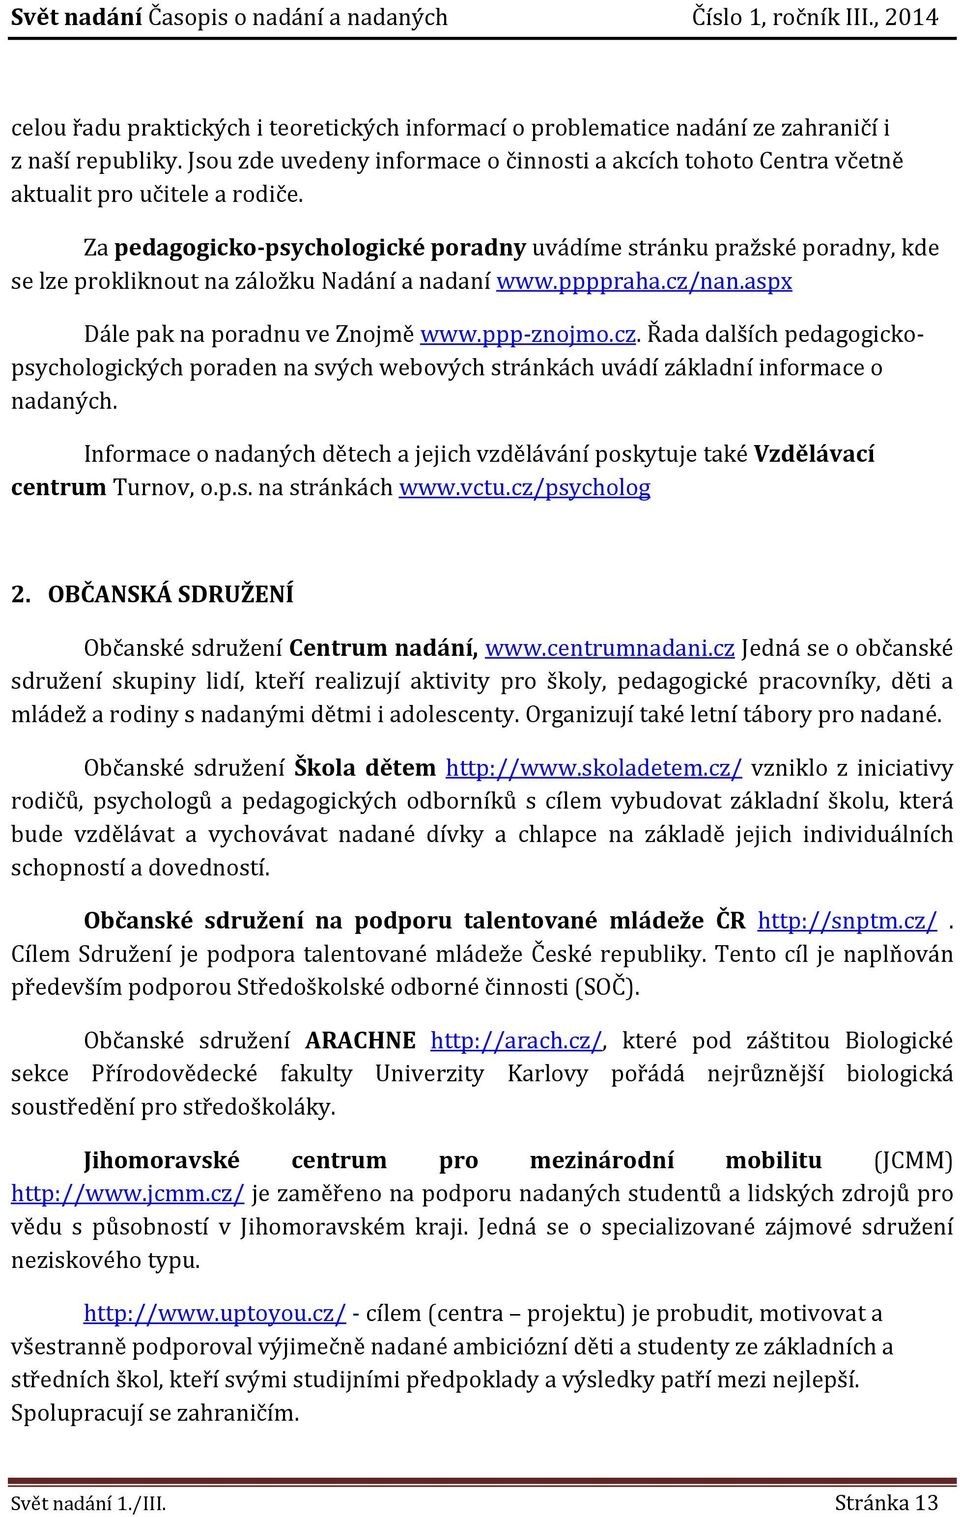 Za pedagogicko-psychologické poradny uvádíme stránku pražské poradny, kde se lze prokliknout na záložku Nadání a nadaní www.ppppraha.cz/